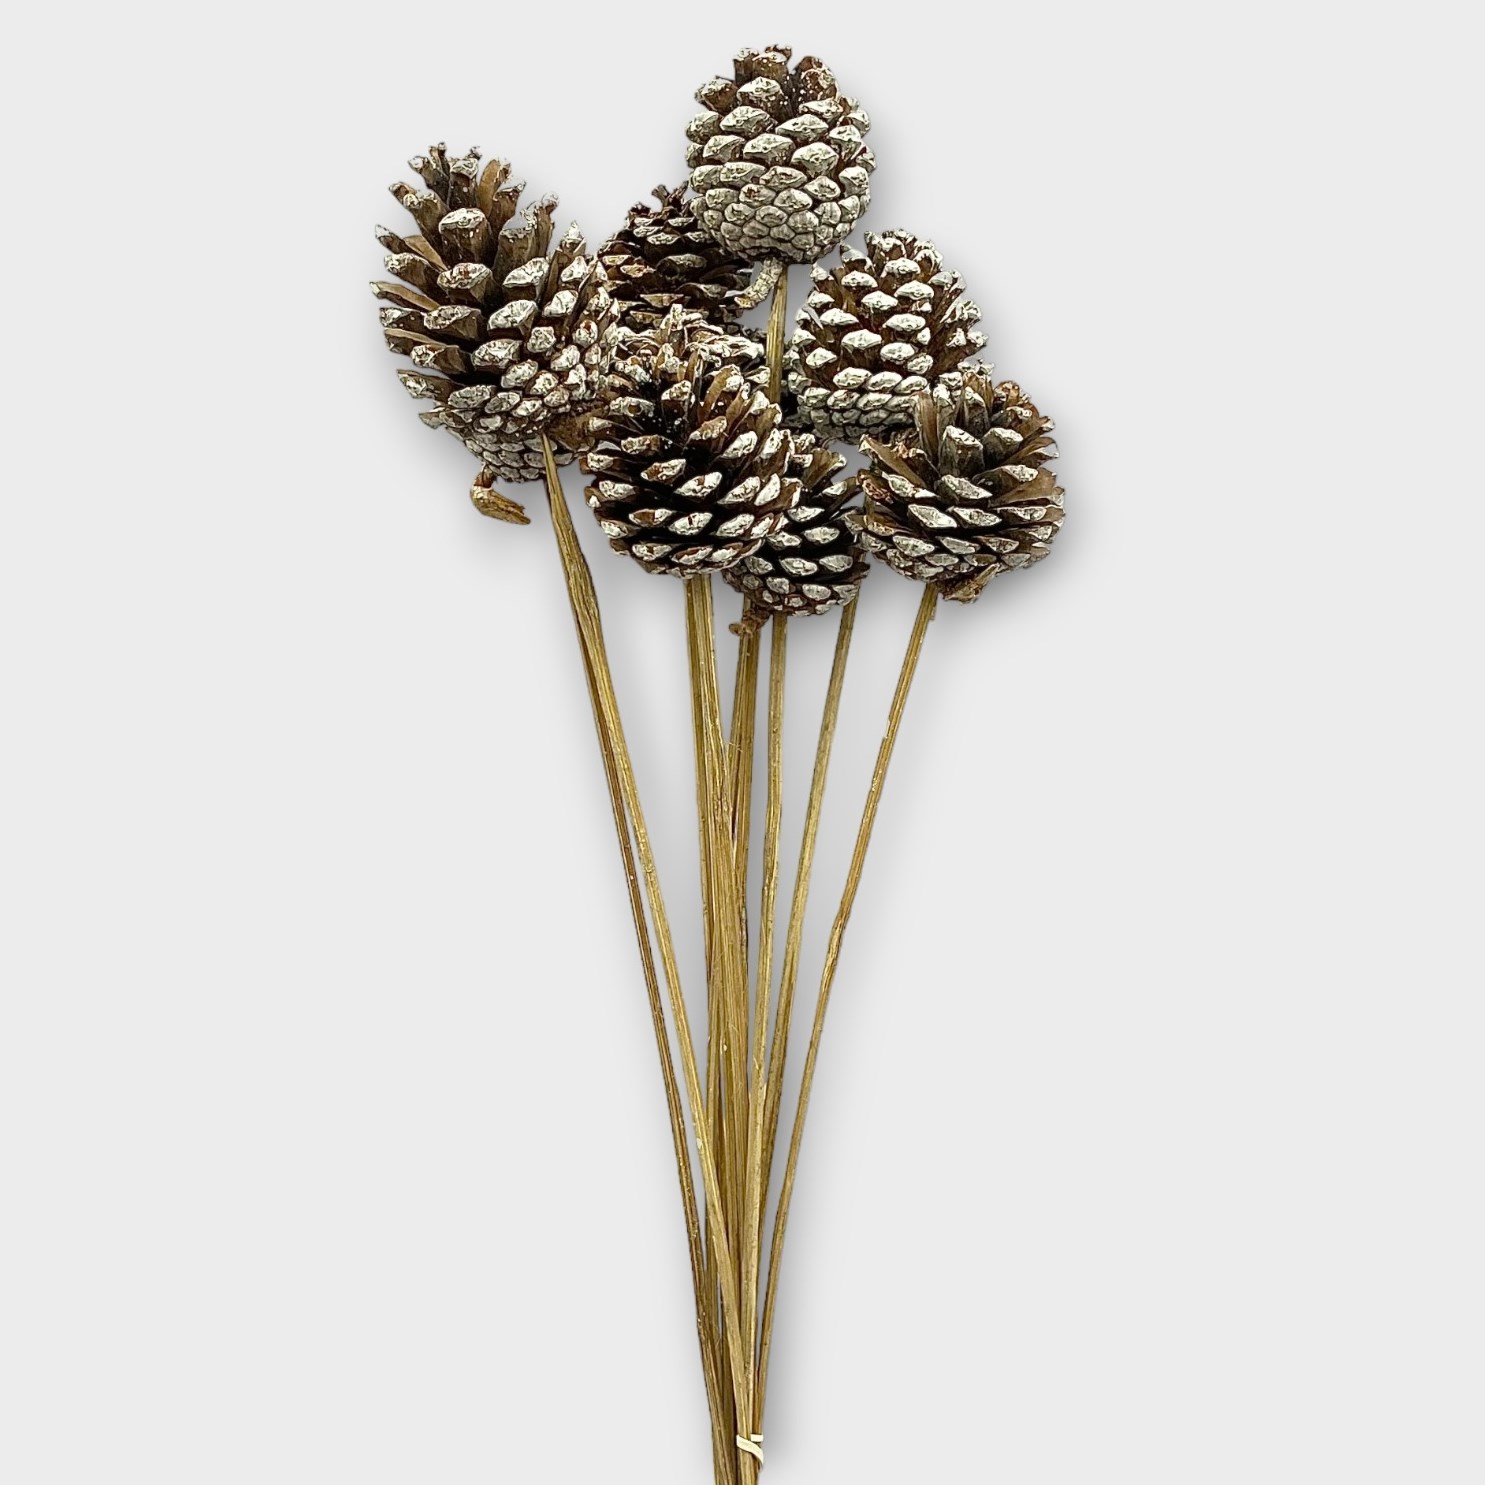 Pine Cone Picks 50cm  Wholesale Dutch Flowers & Florist Supplies UK